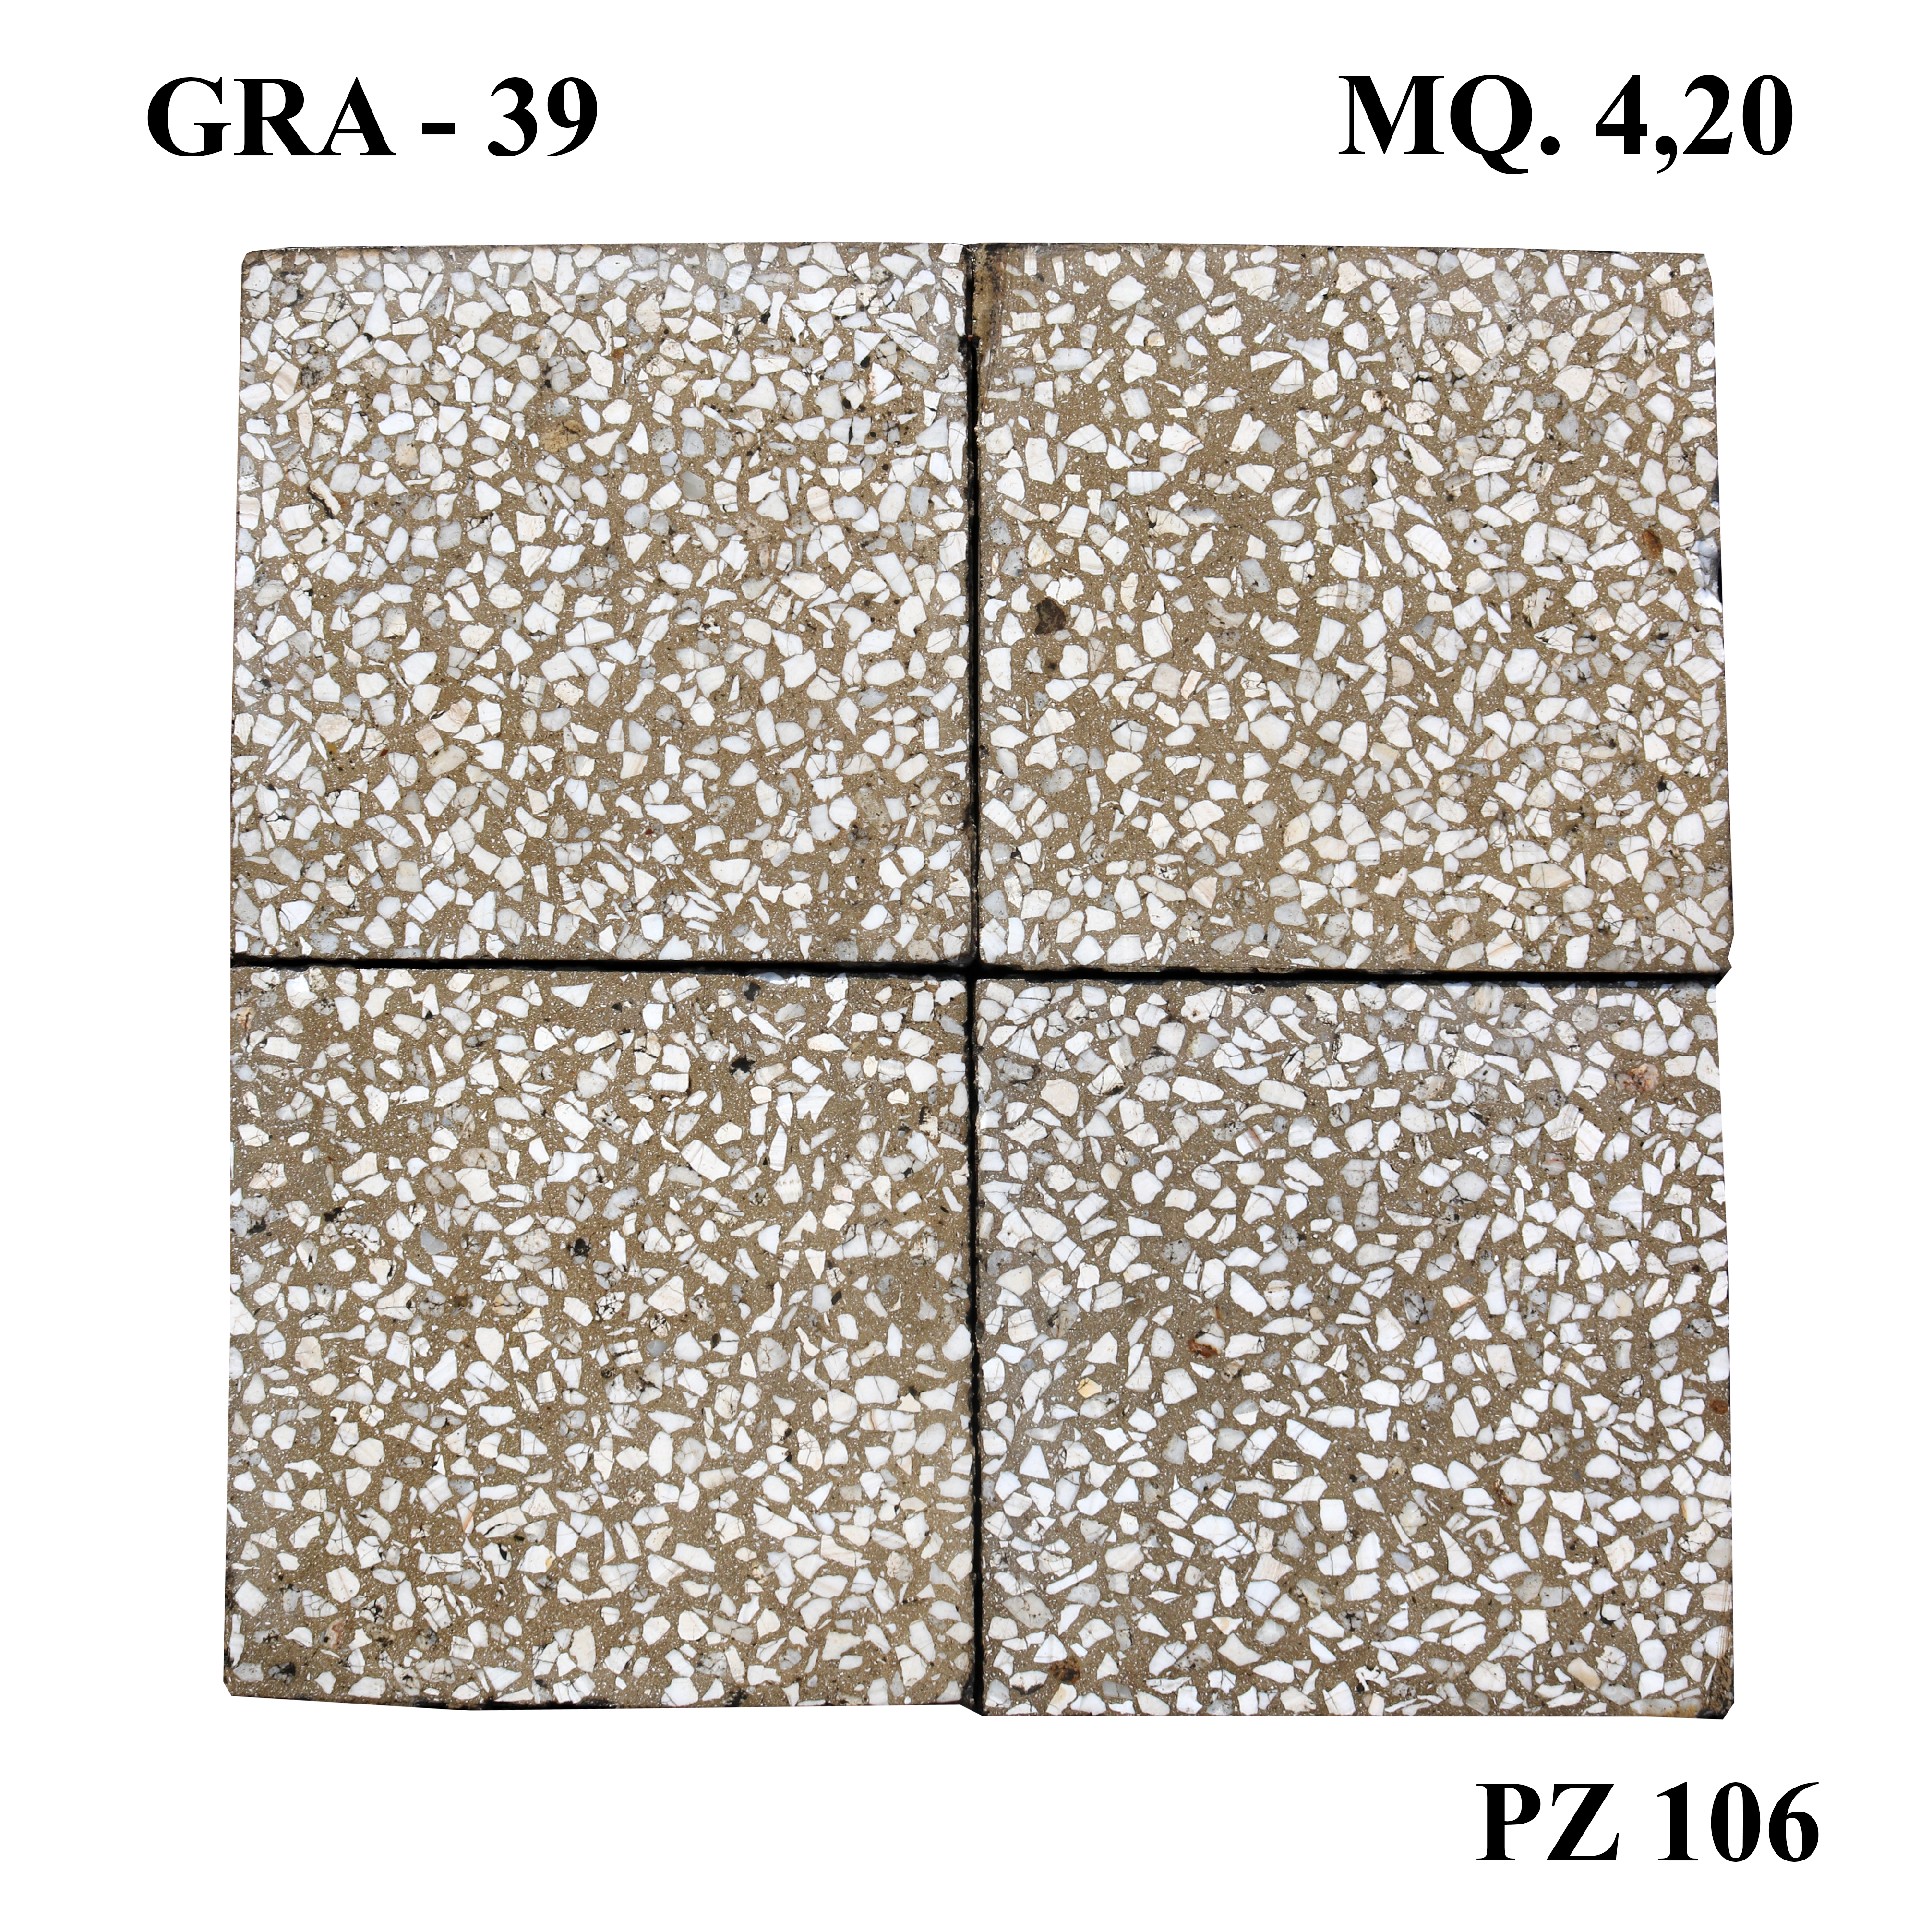 Antica pavimentazione in graniglia cm 20x20. - Cementine e Graniglie - Pavimentazioni Antiche - Prodotti - Antichità Fiorillo